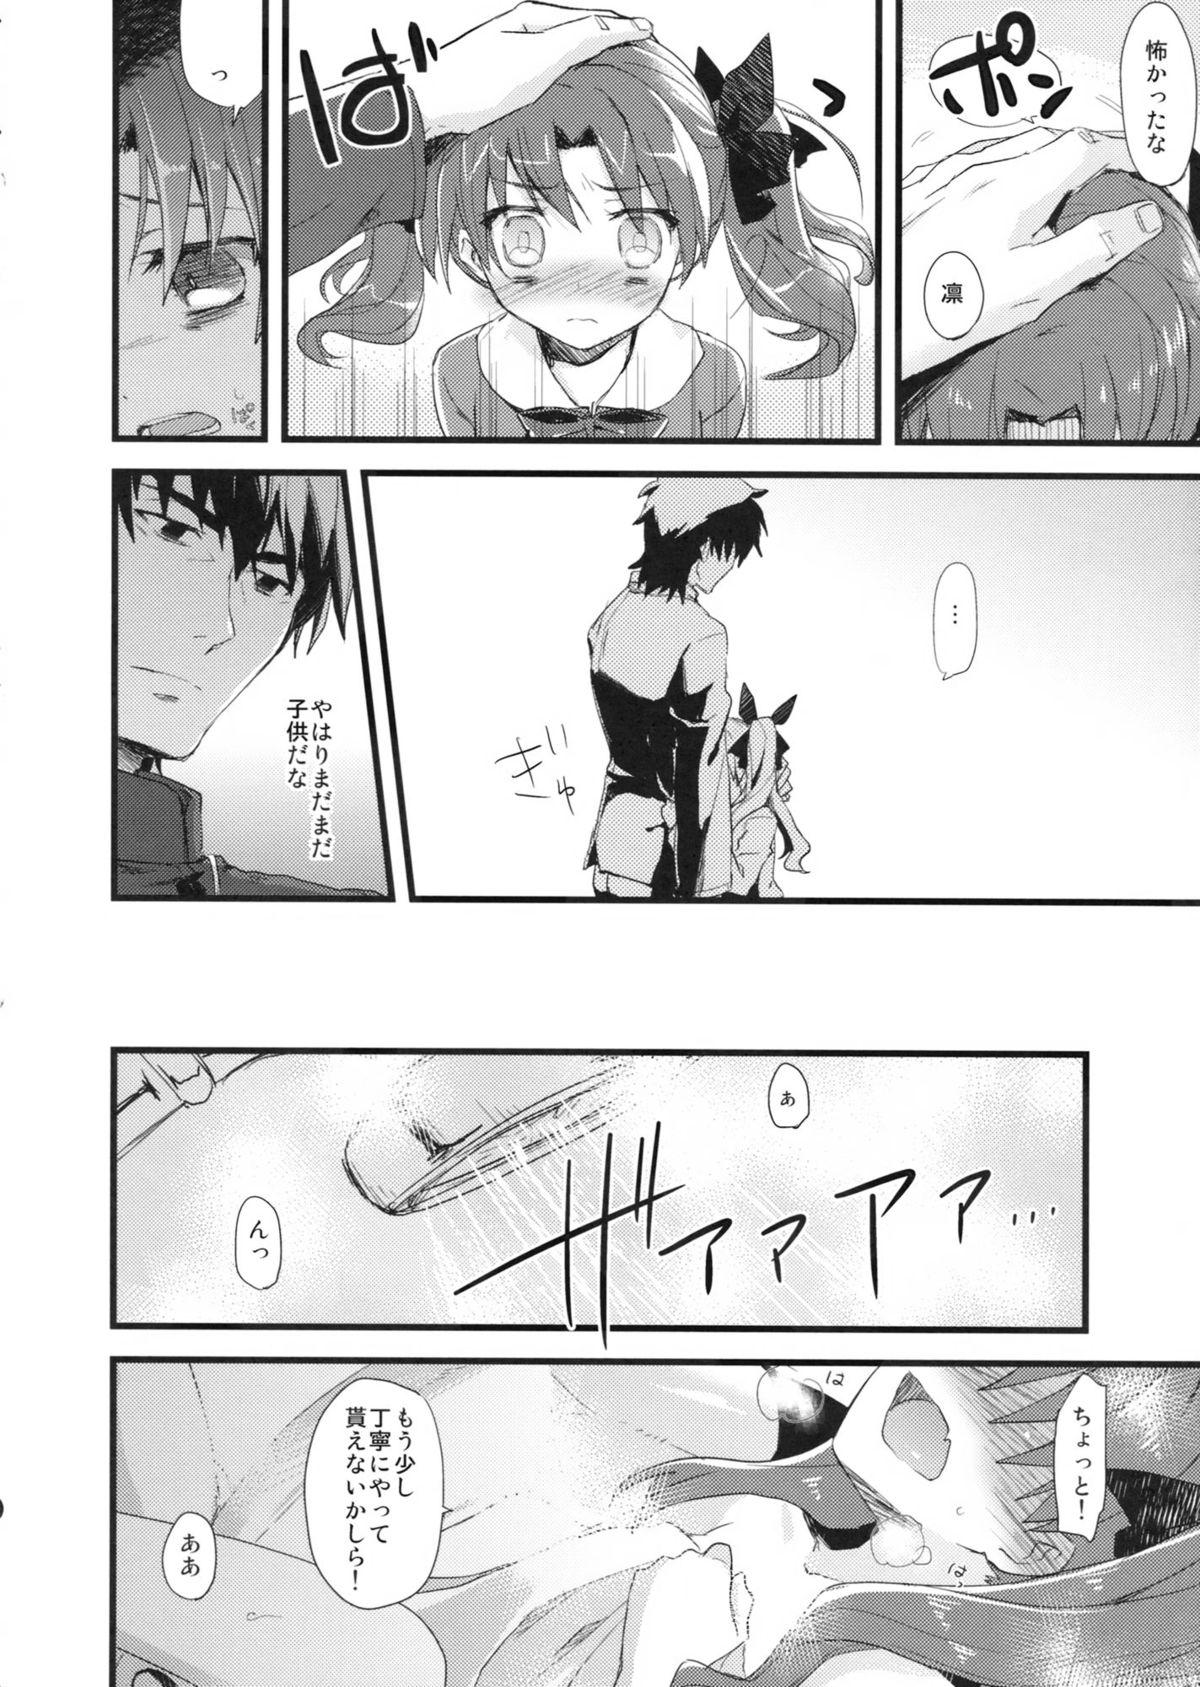 Putita LO : Rin to Yuetsu wo Shiranai Shinpu - Fate zero Hermosa - Page 10